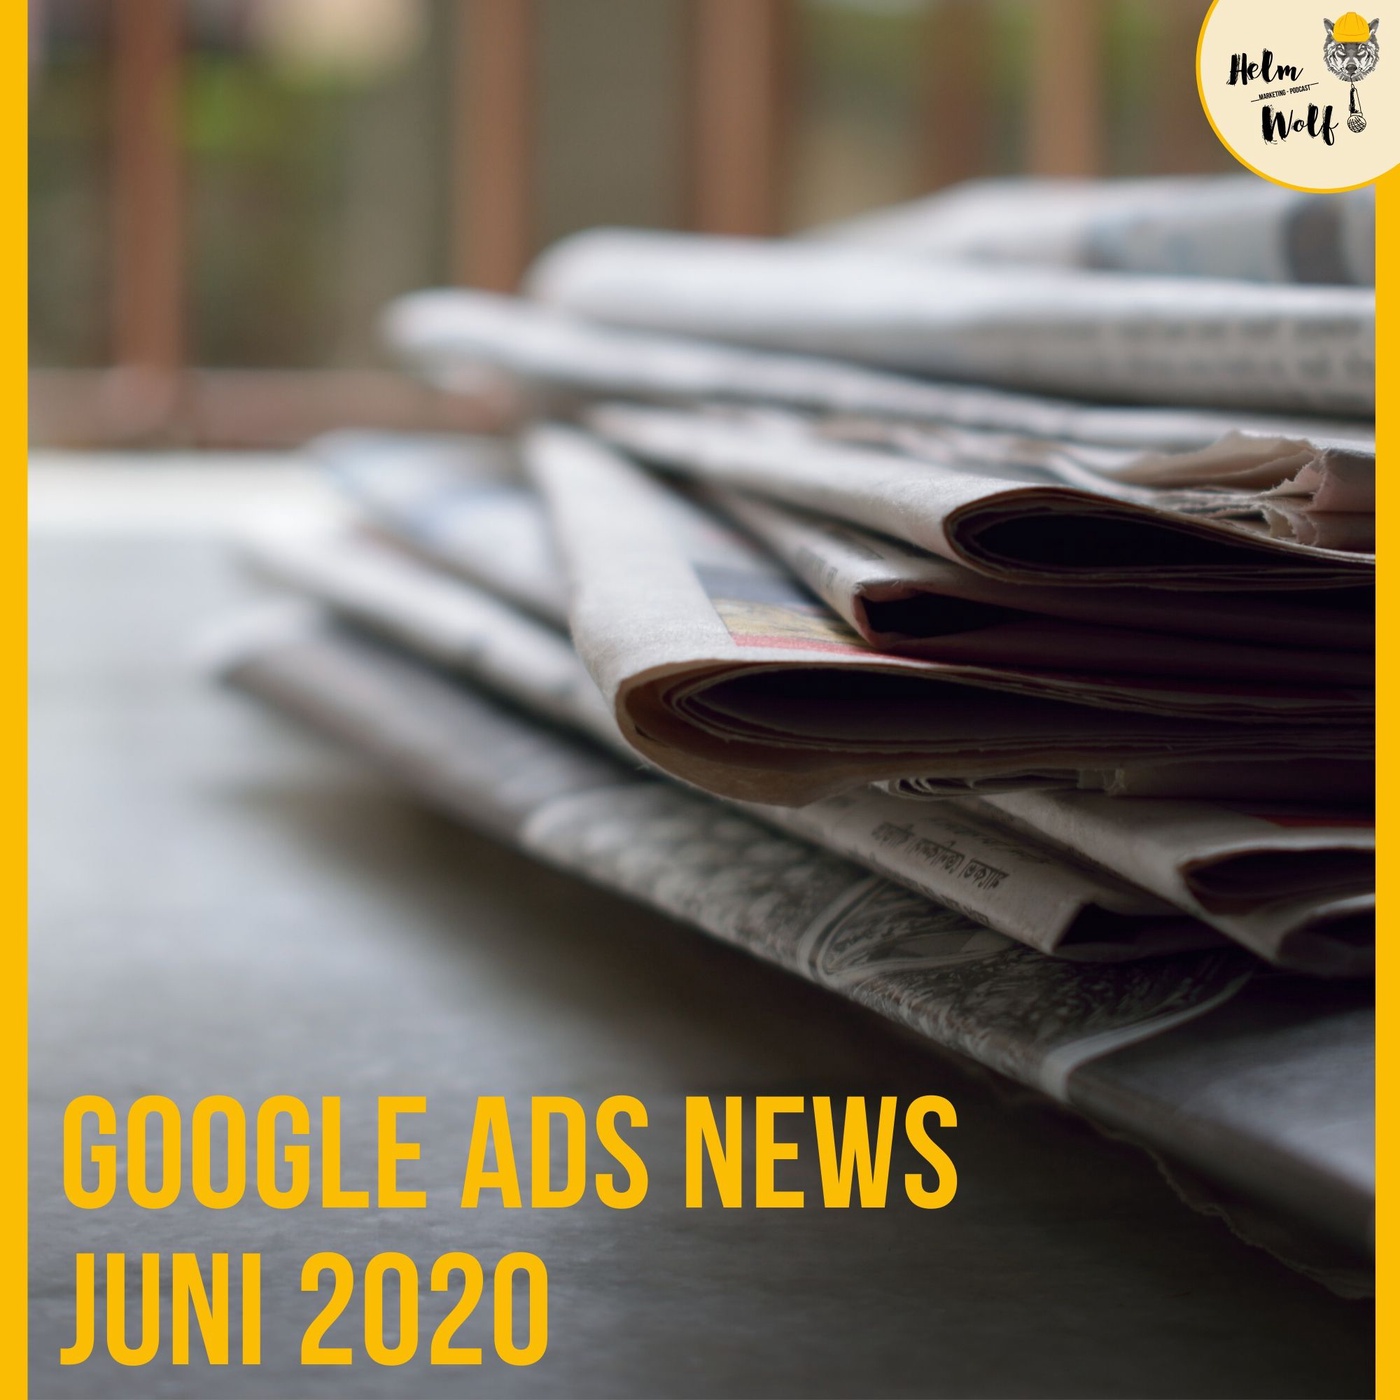 Google verschenkt Geld!? - Google Ads News Juni 2020 | #85 Helmwolf Marketing Podcast